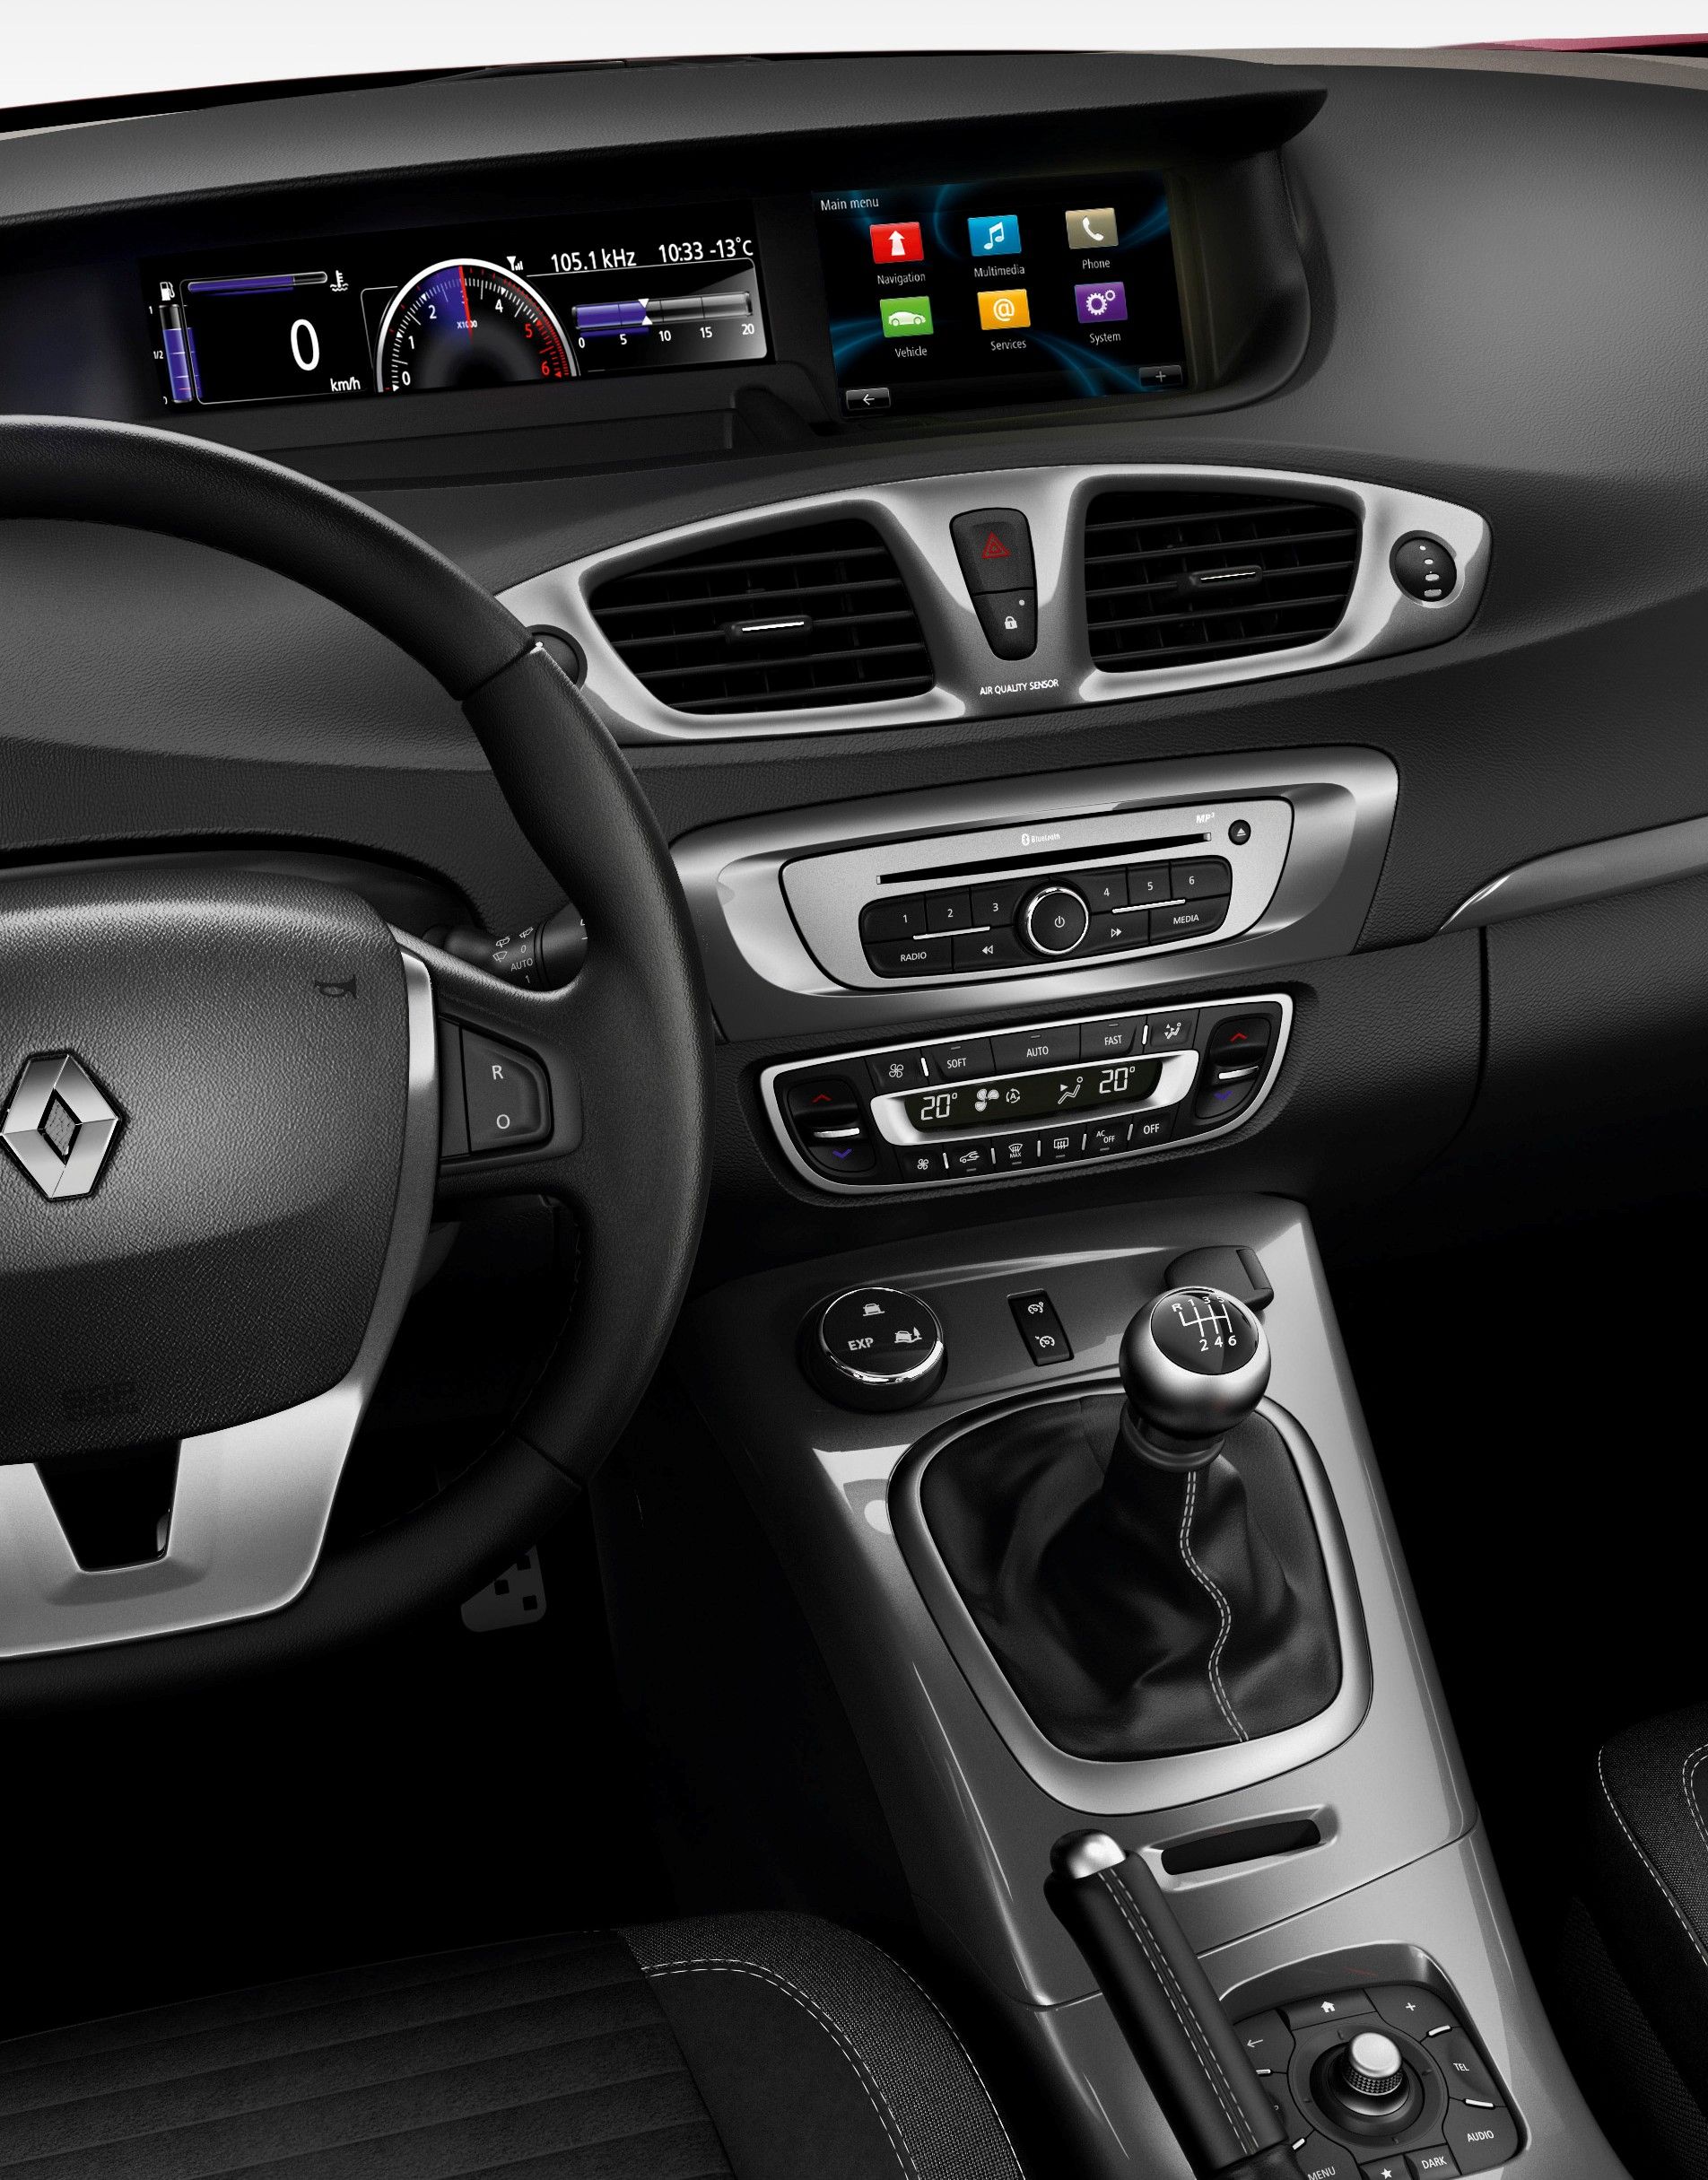 2013 Renault Scenic XMOD